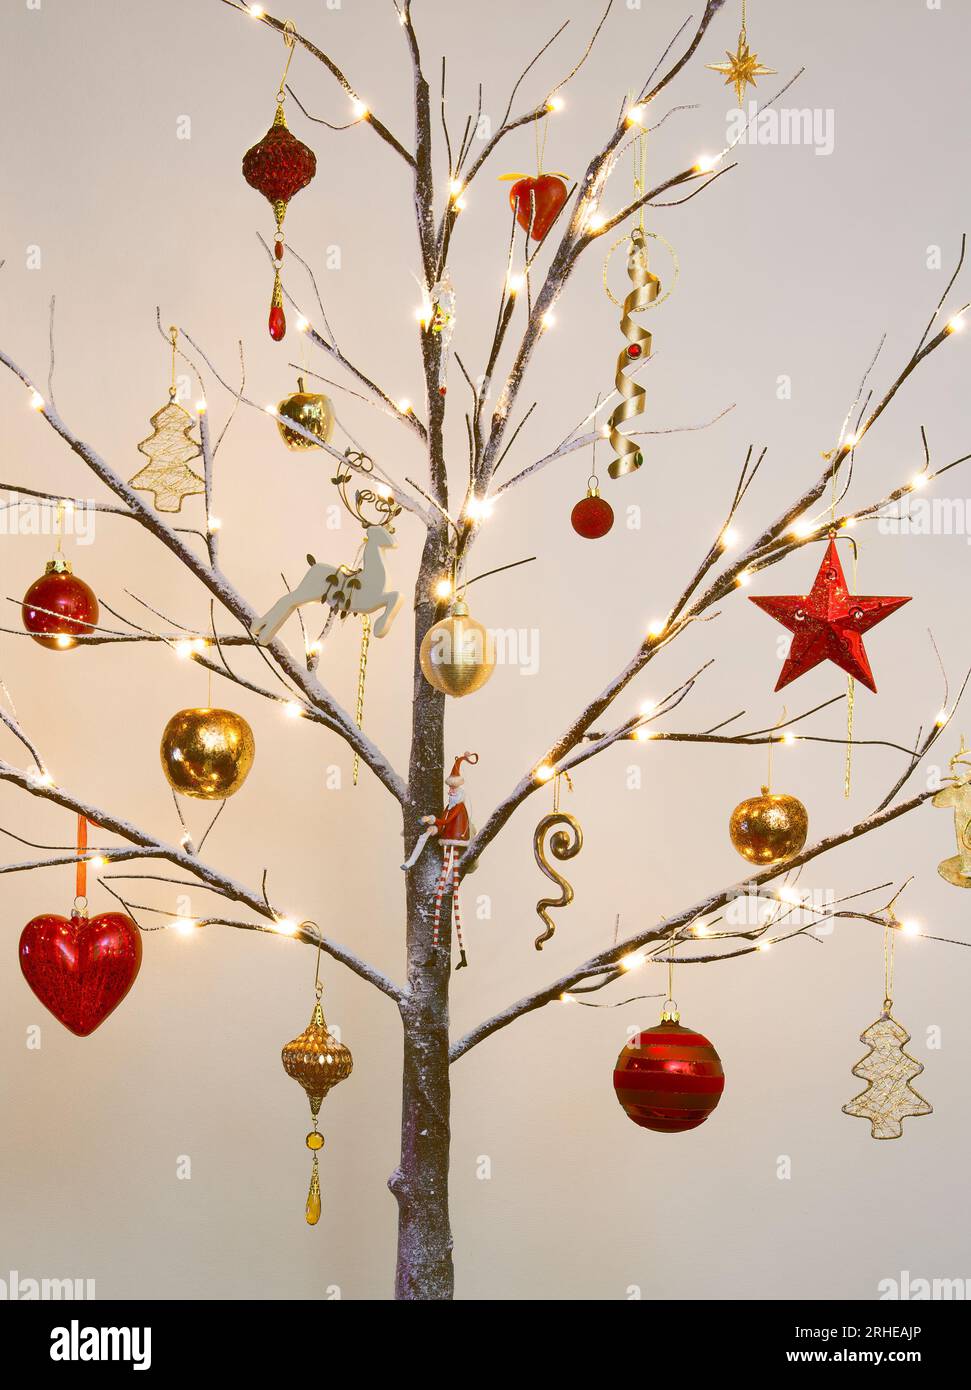 Weihnachtsbaumschmuck in traditionellem Rot und Gold hängt an einem modernen Zweig mit Schnee-Effekt Stockfoto